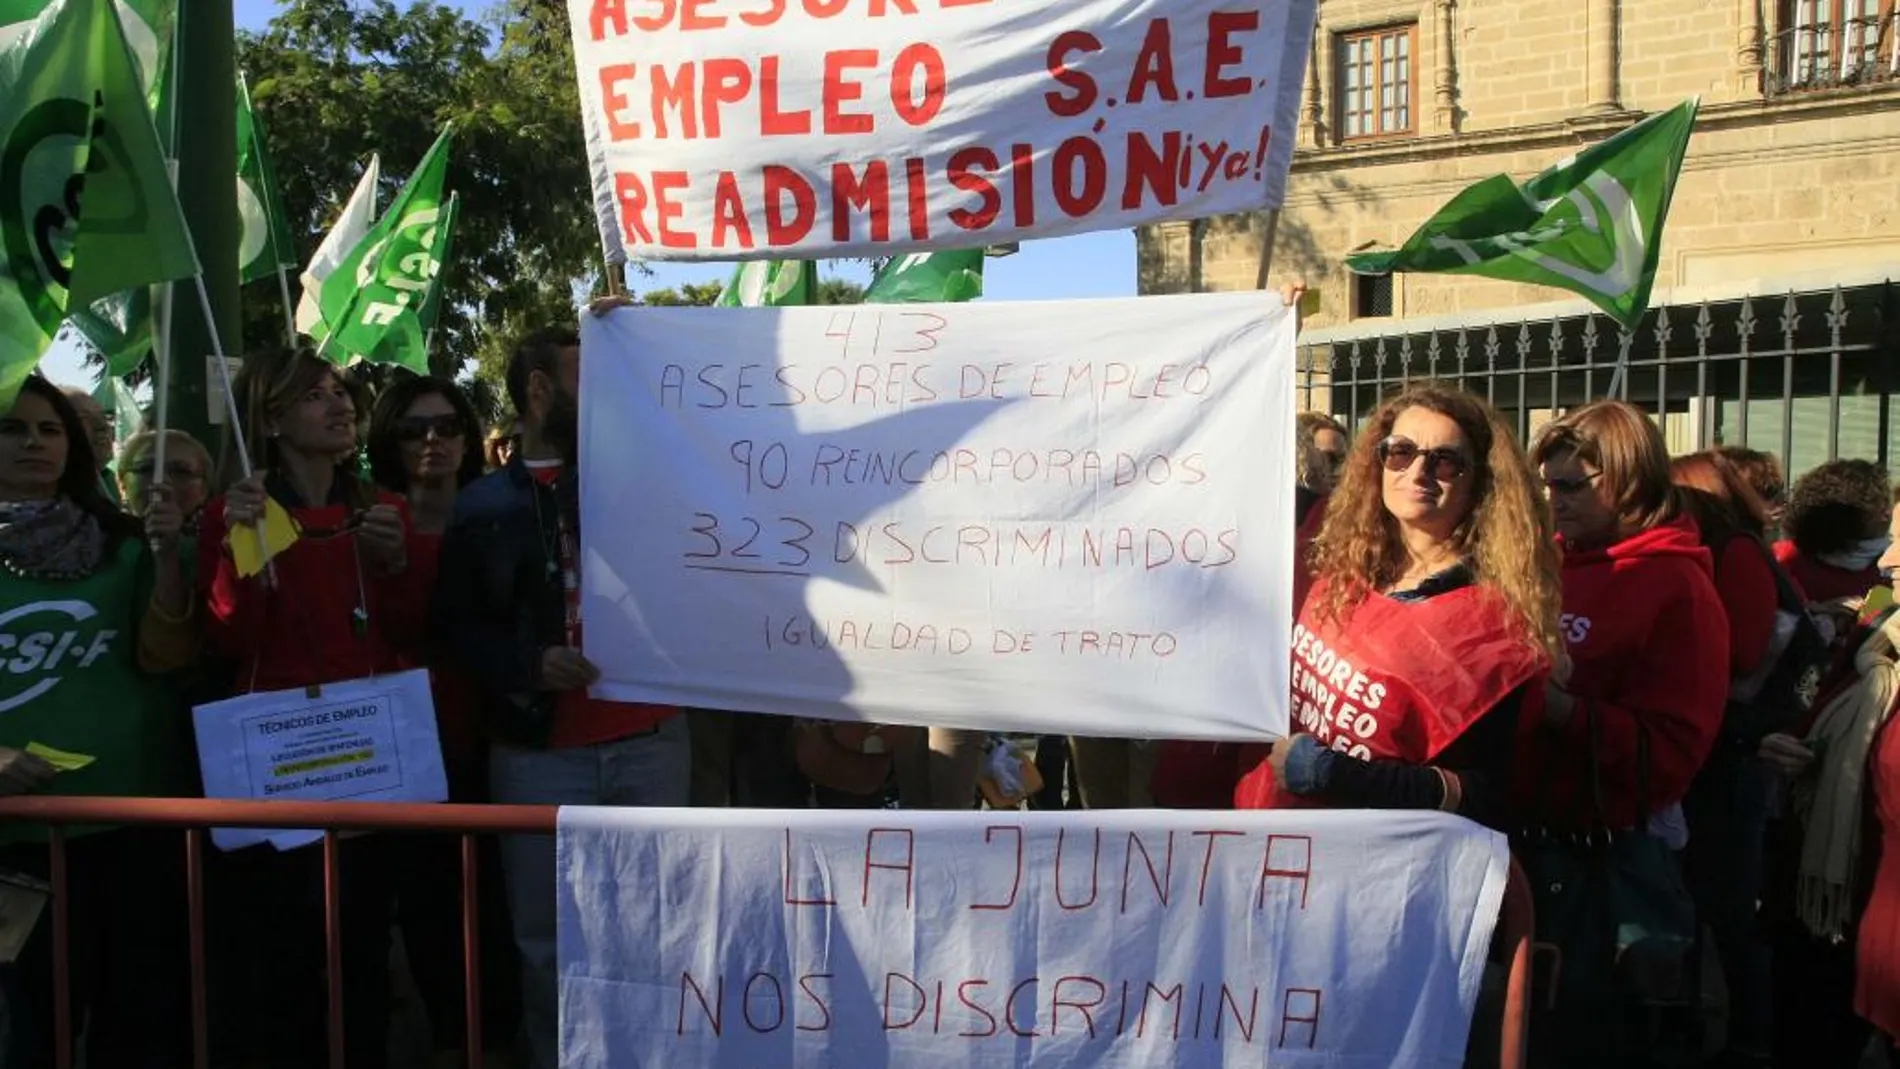 Las protestas de los asesores de empleo del SAE se han sucedido los últimos tiempos